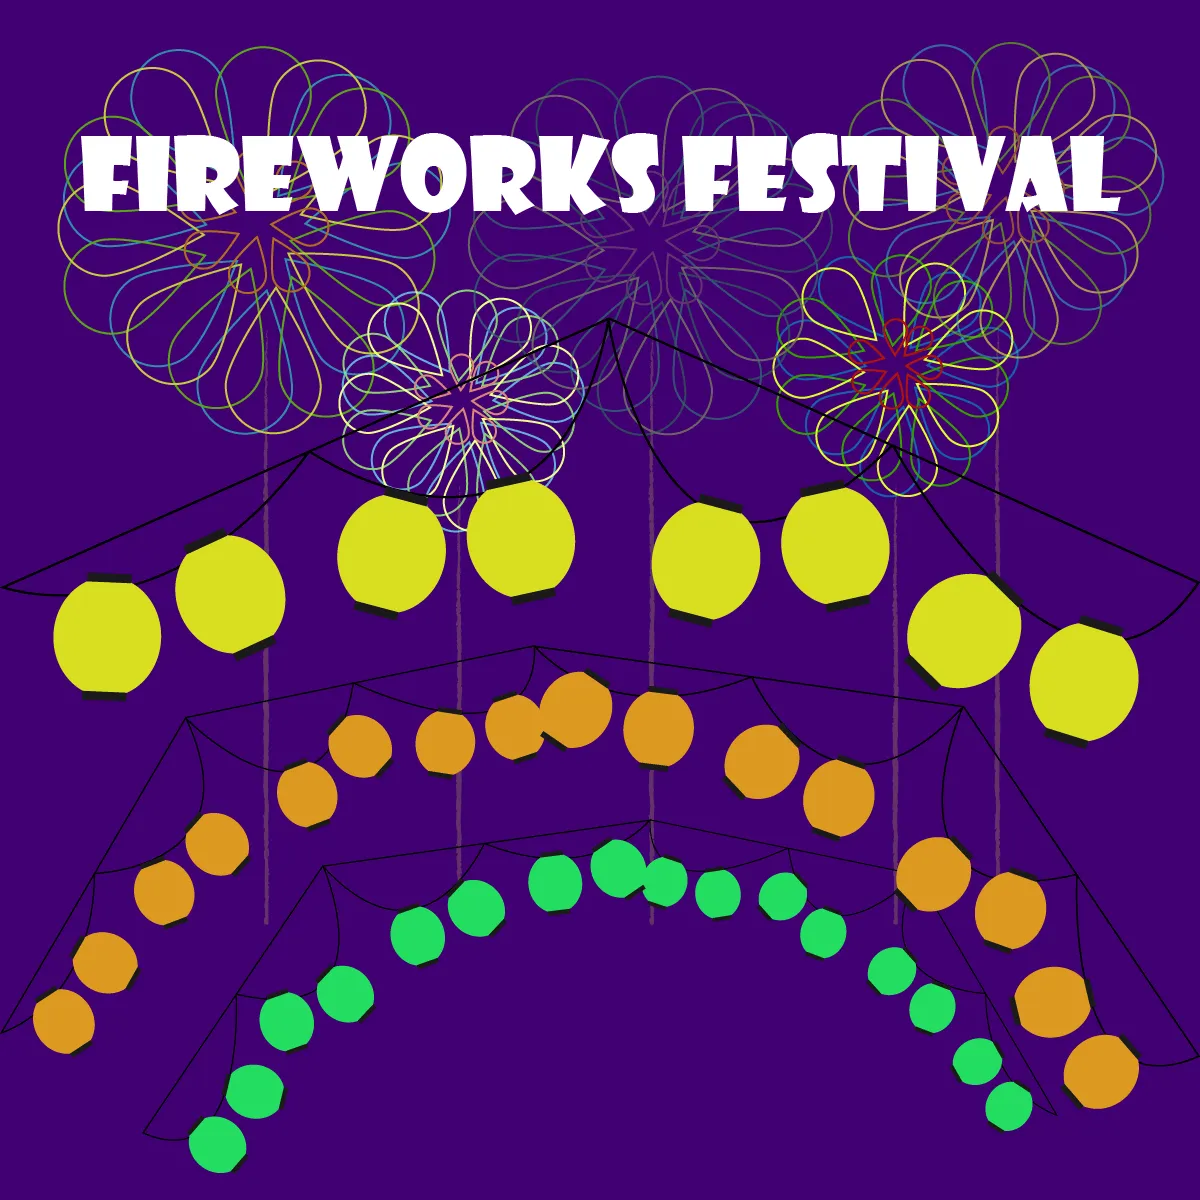 Fireworks Festival、花火大会やお祭り用のオリジナル販促物のご準備をしませんか？